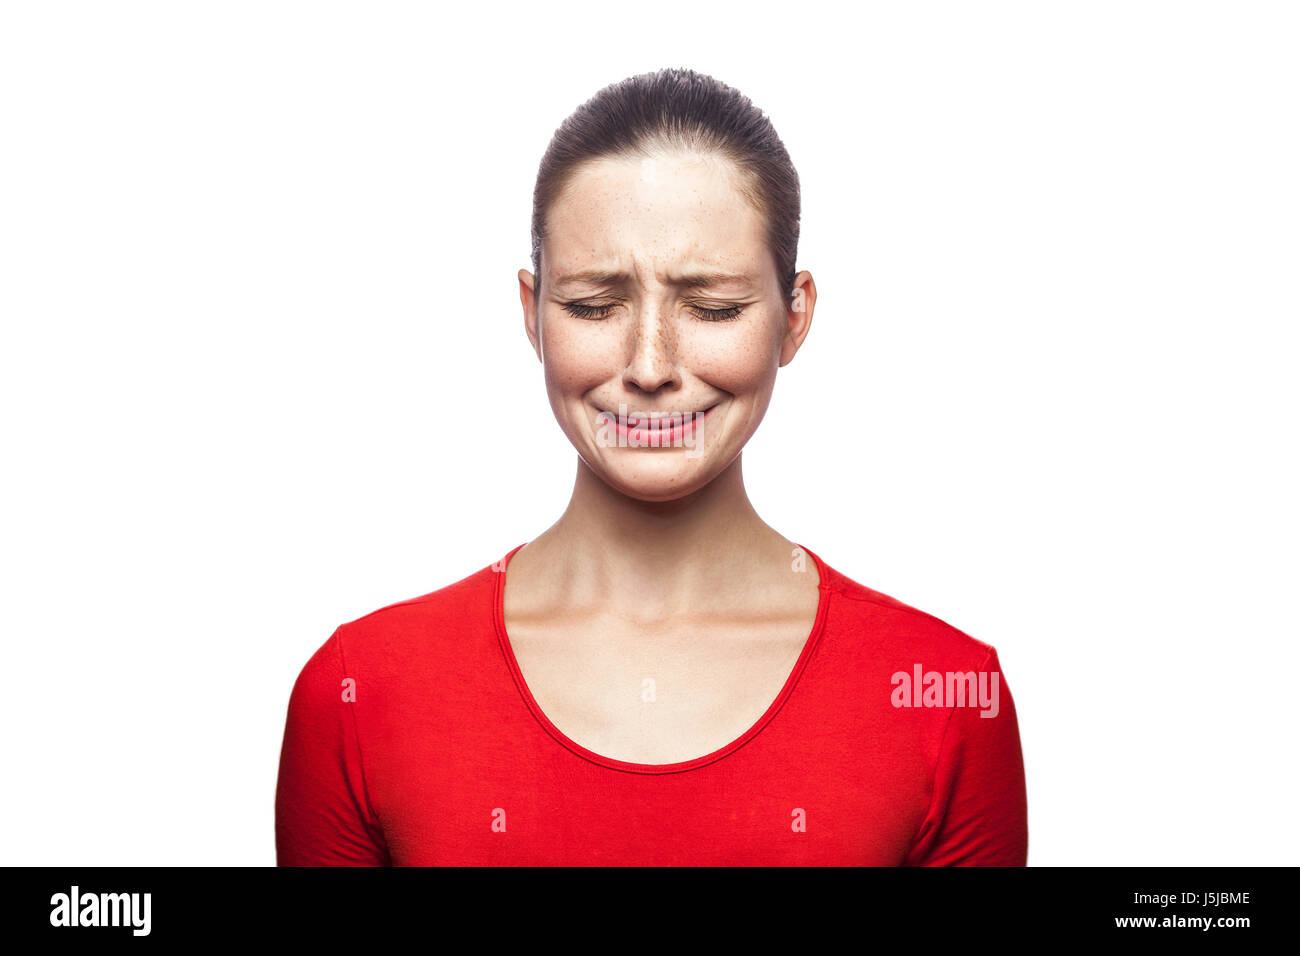 Porträt von traurig unglücklich weinende Frau im roten T-shirt mit Sommersprossen. geschlossenen Augen, Studio gedreht. isoliert auf weißem Hintergrund. Stockfoto